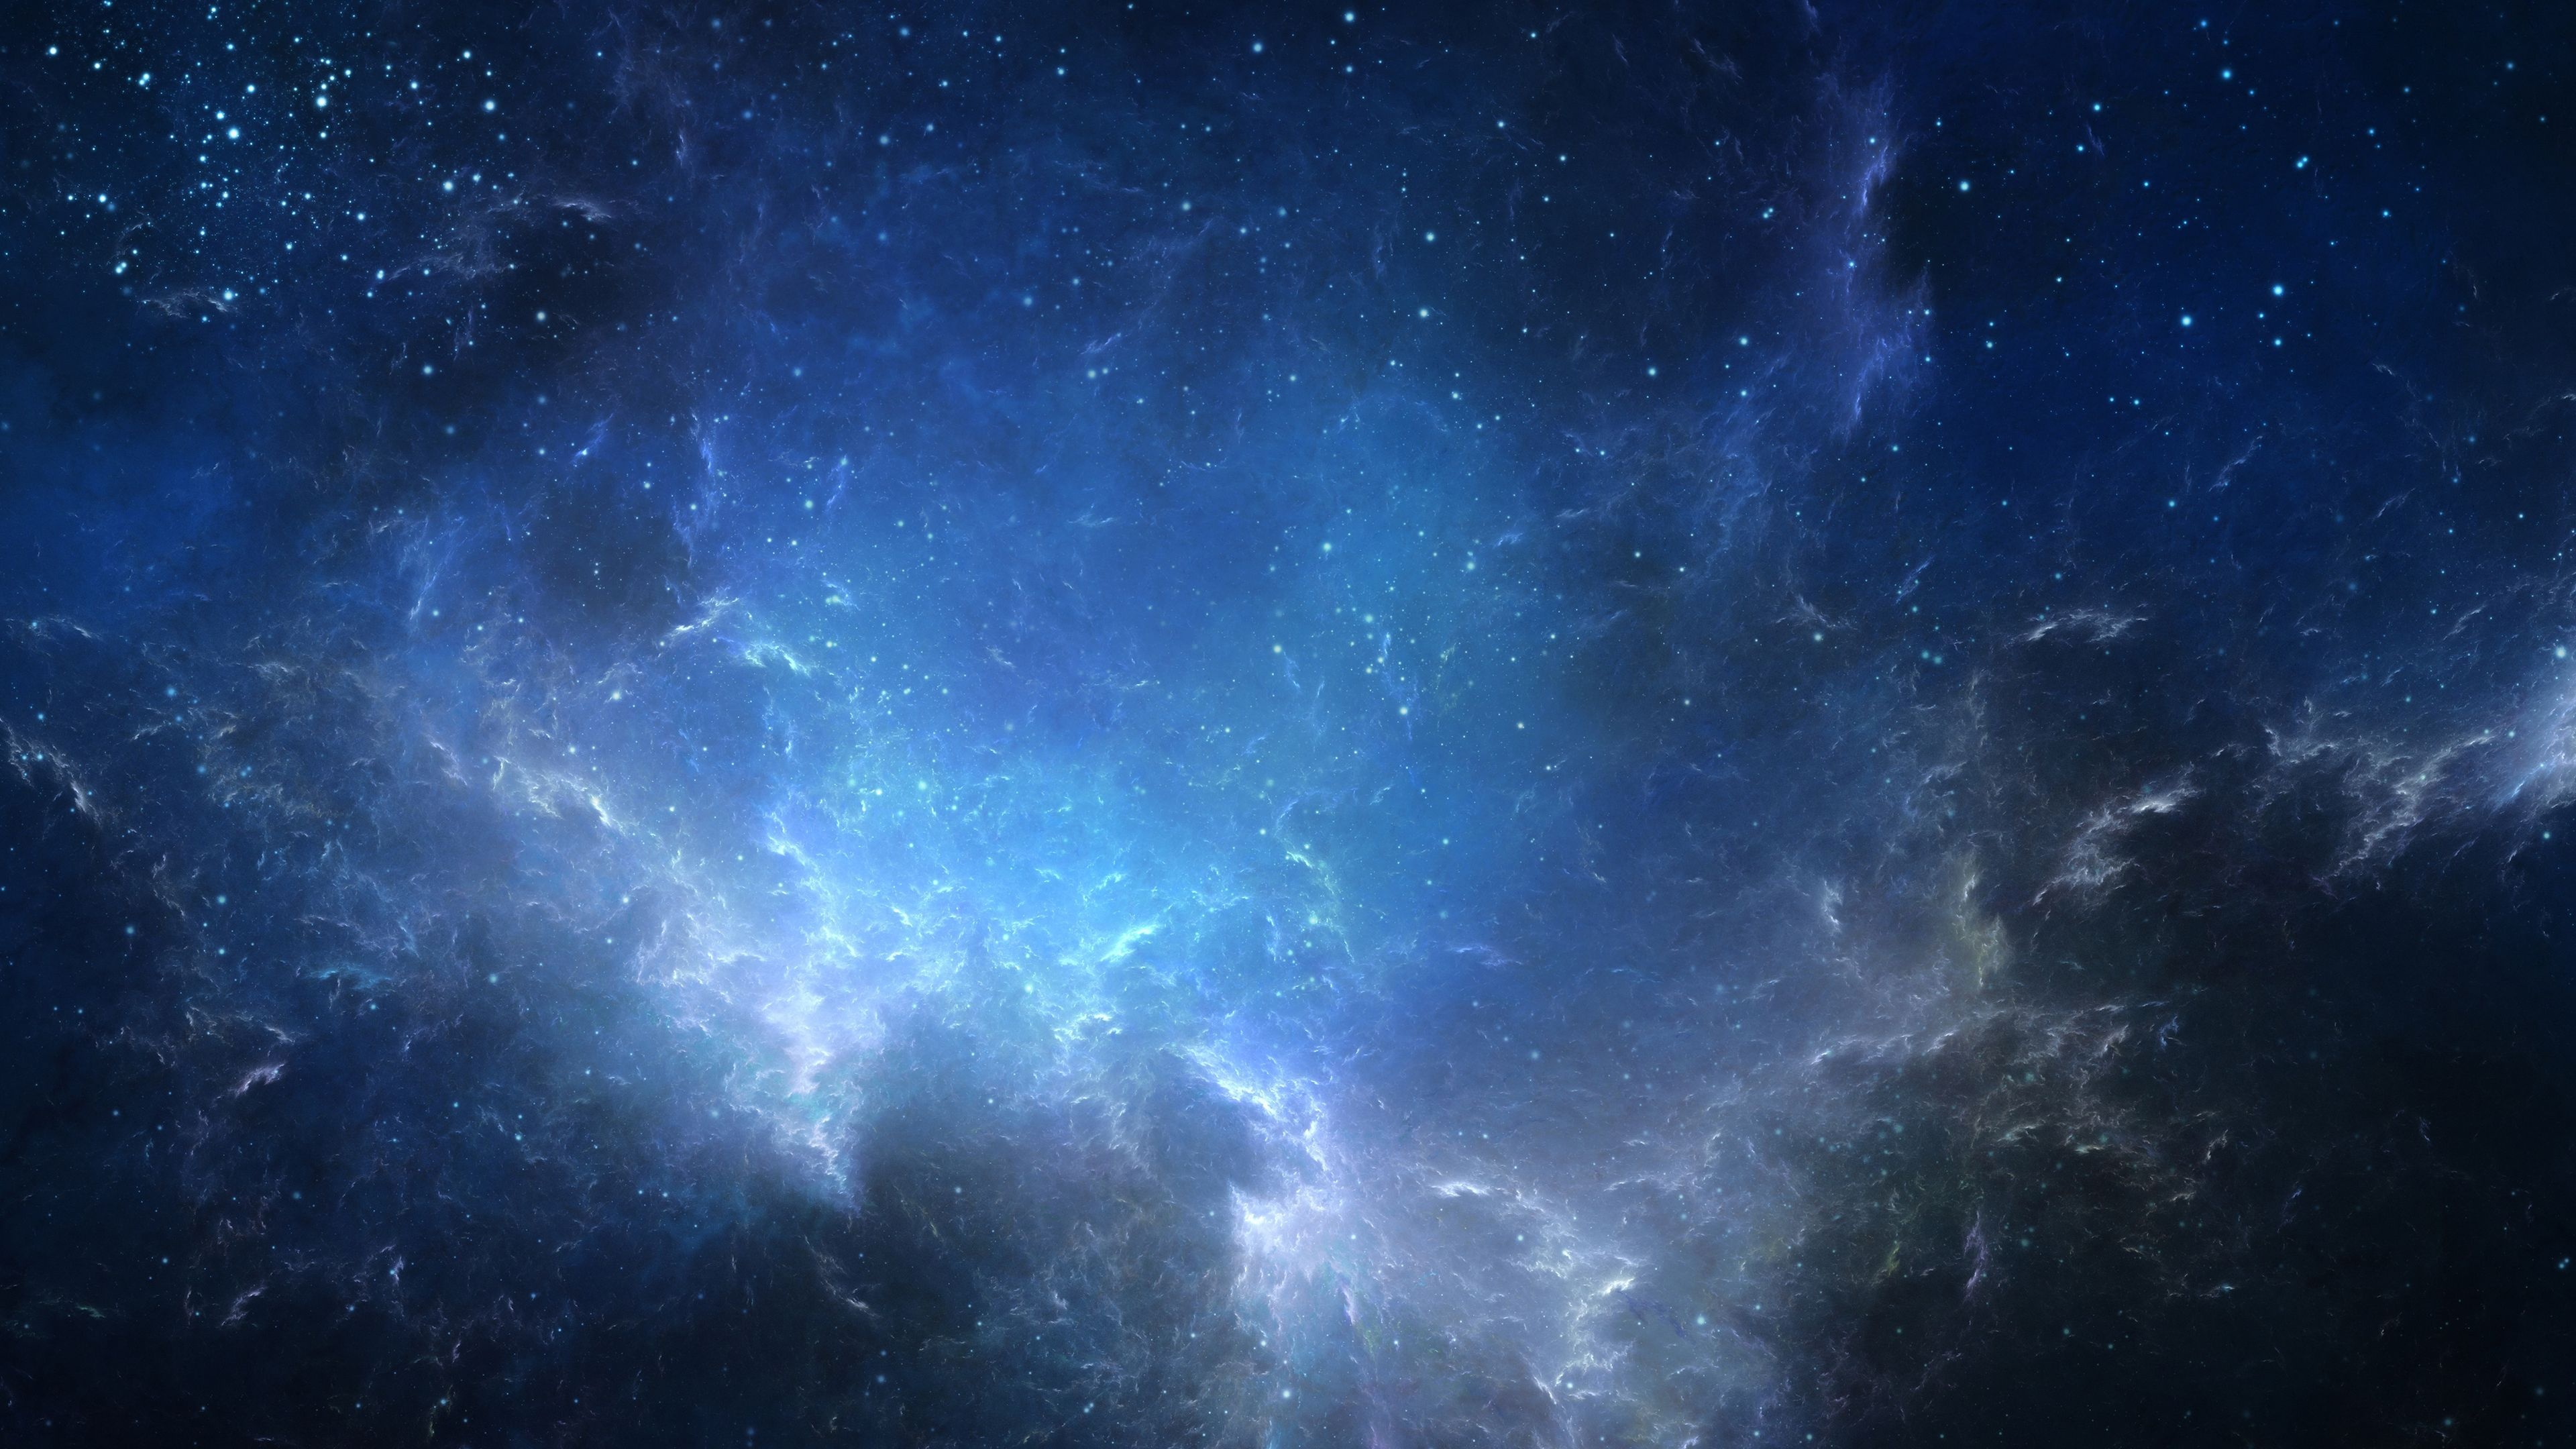 Universe, Vast cosmos, Astral beauty, Stellar wonders, 3840x2160 4K Desktop